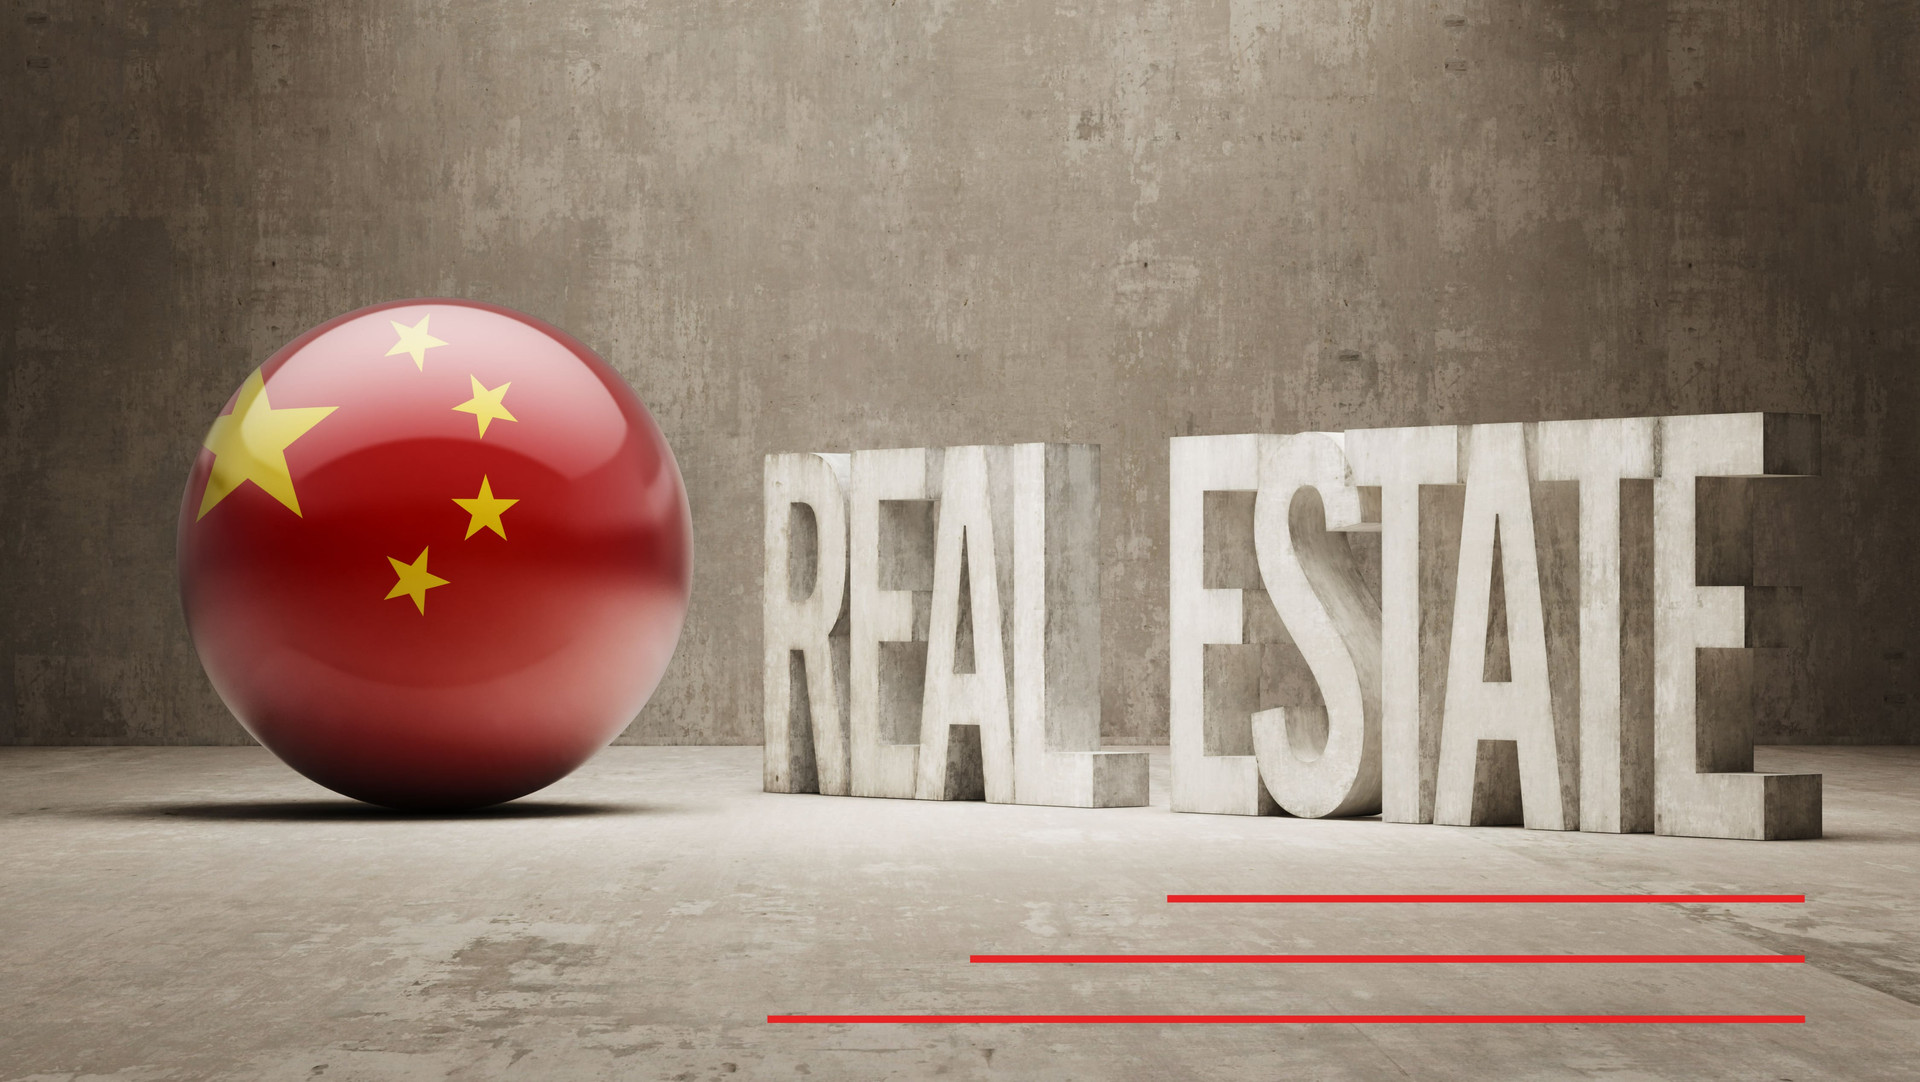 Trung Quốc cân nhắc nới lỏng “3 lằn ranh đỏ”, cứu thị trường bất động sản khỏi lao đao